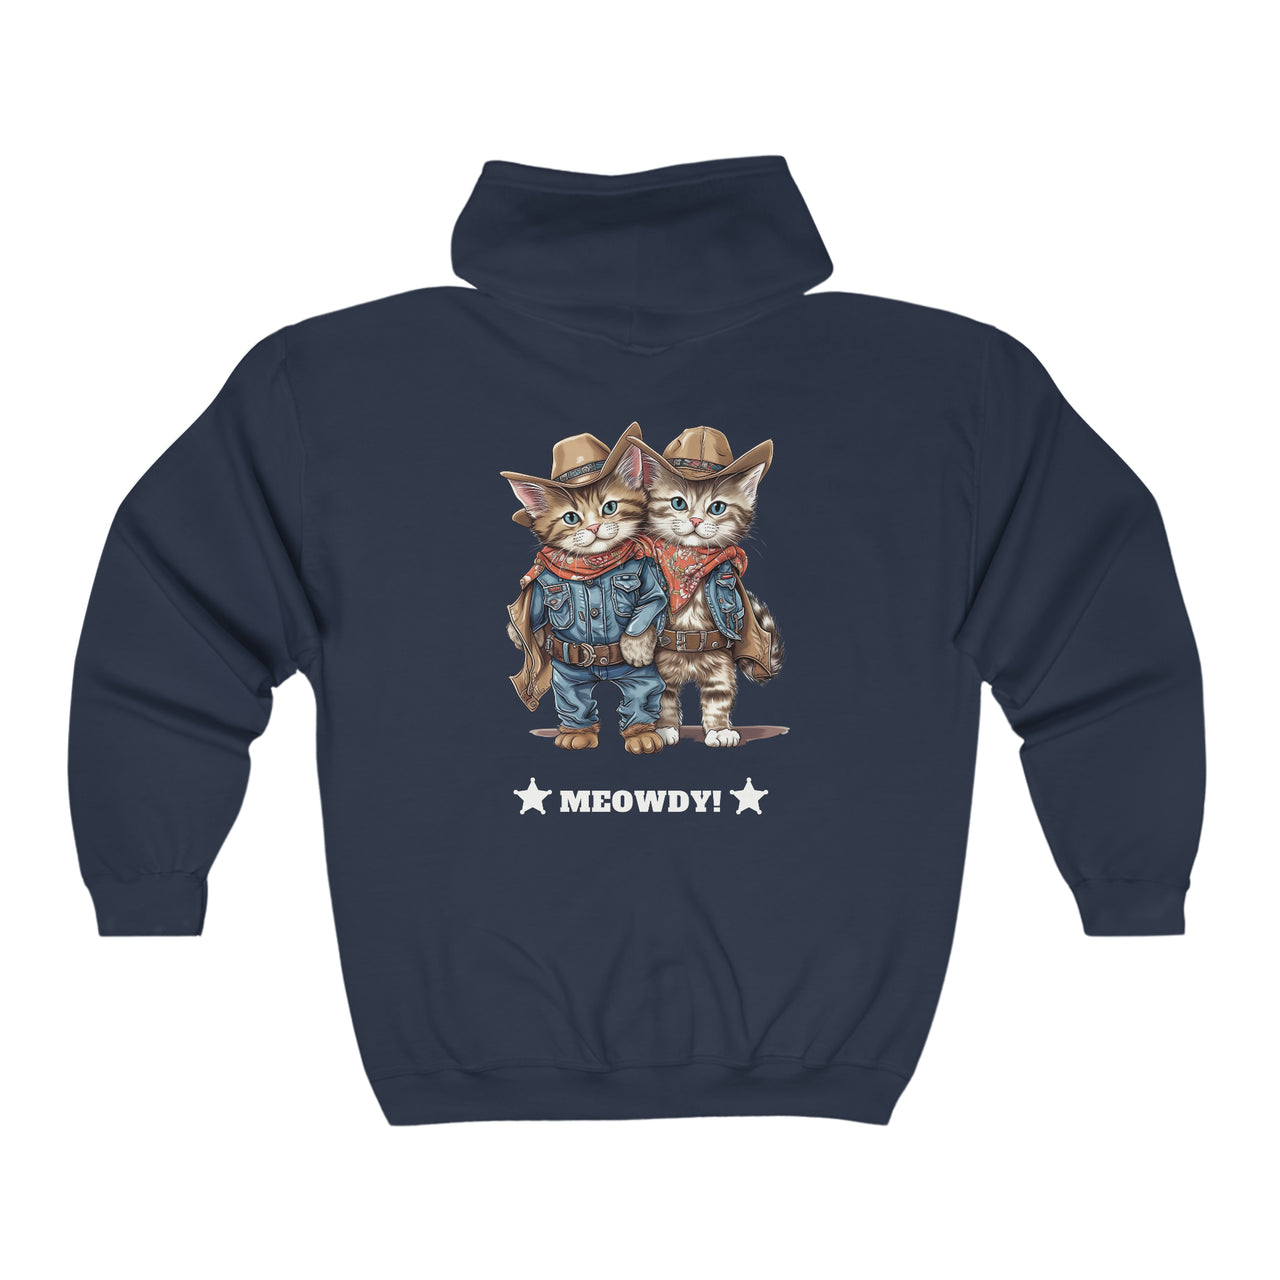 Meowdy Unisex Full Zip Hooded Sweatshirt Kittens Dressed as Cowboys-Navy-Back